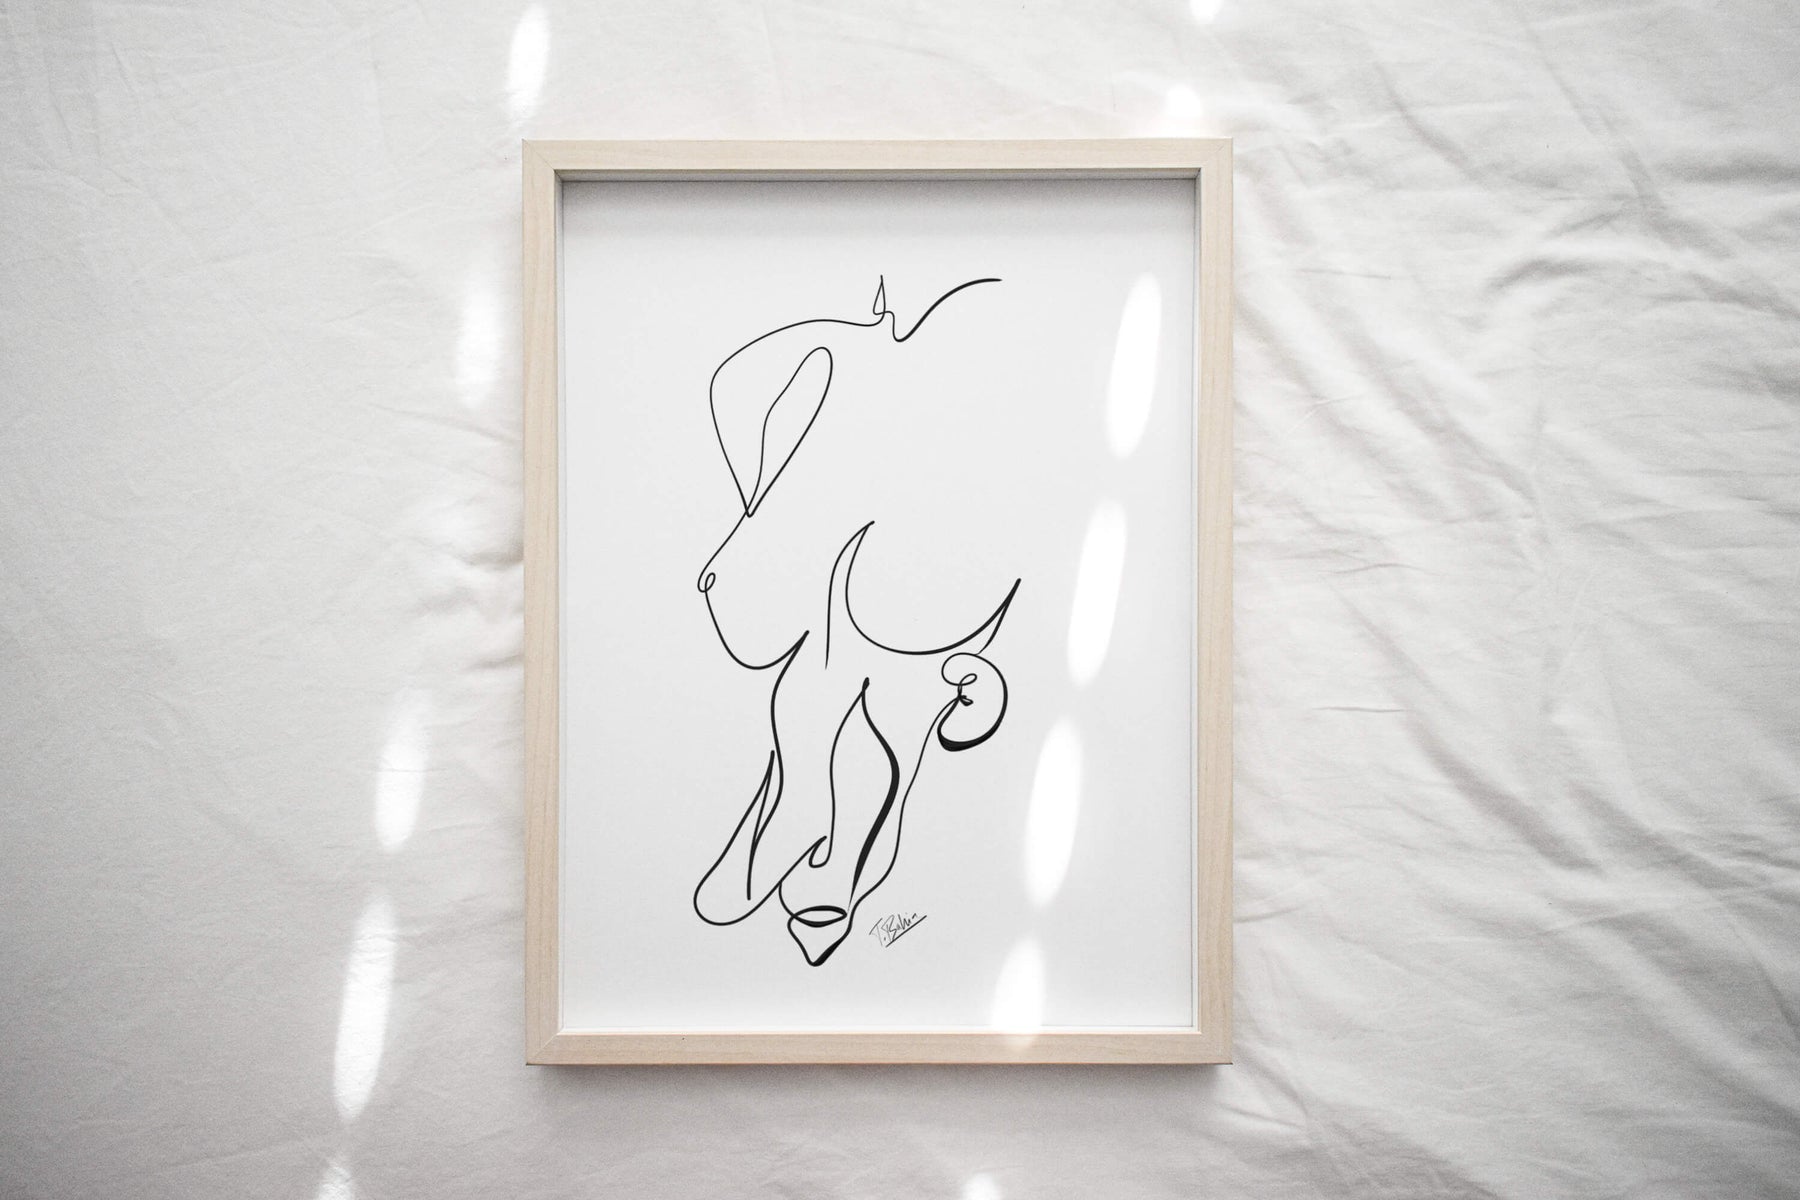 Kidney printable line art-Nephrologist gift-Urologist gift-kidney anatomy art-minimalist medical art-downloadable artwork